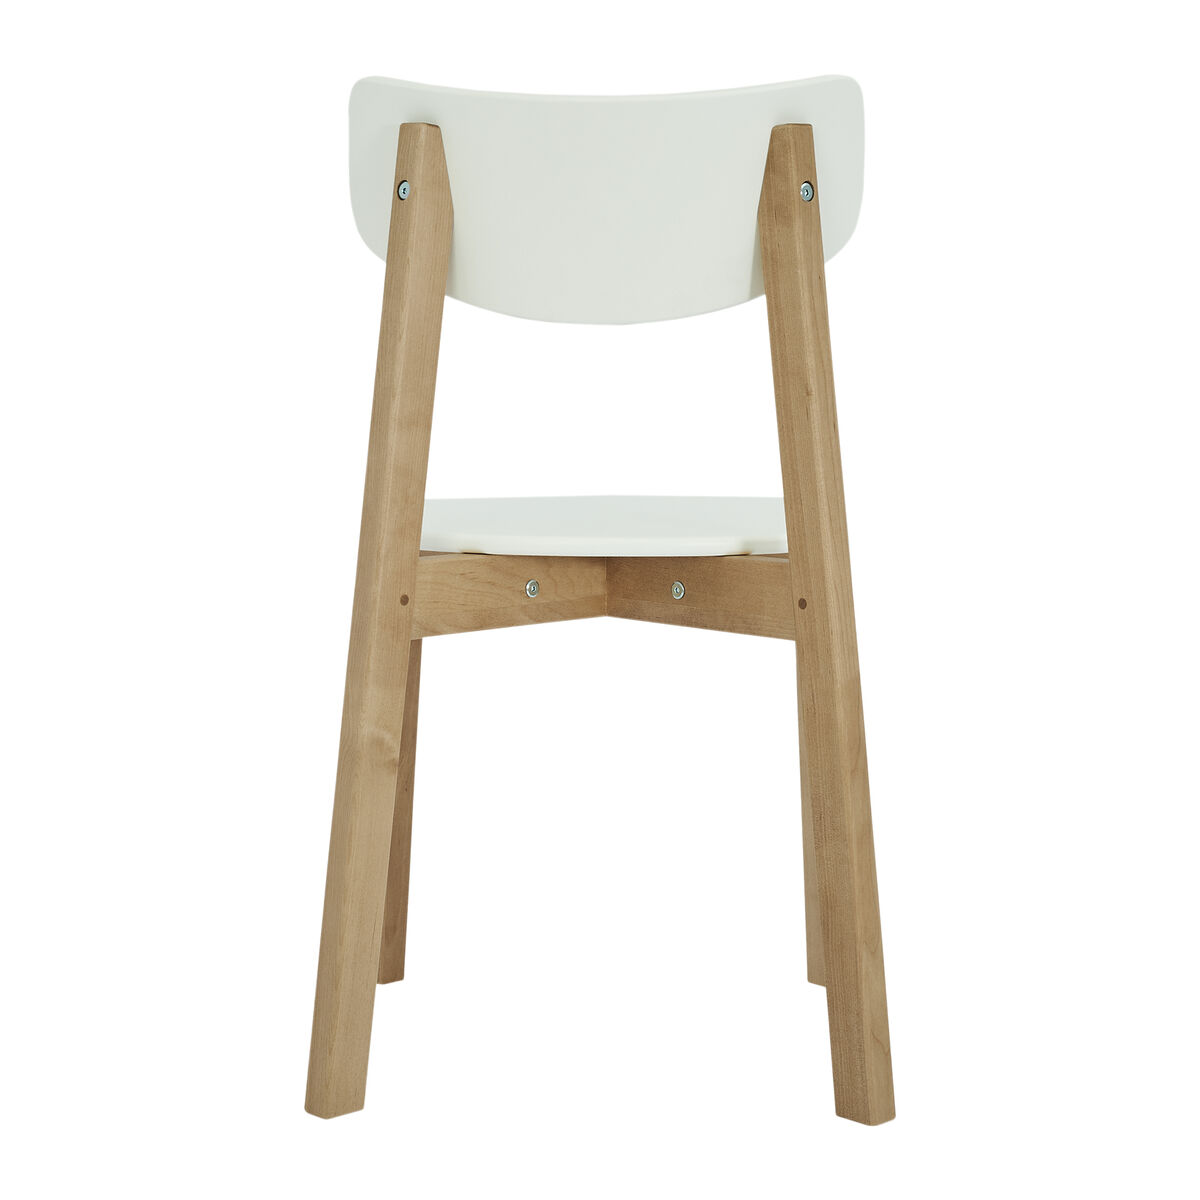 Комплект из двух стульев Вега с жестким сиденьем, Дуб/Белый